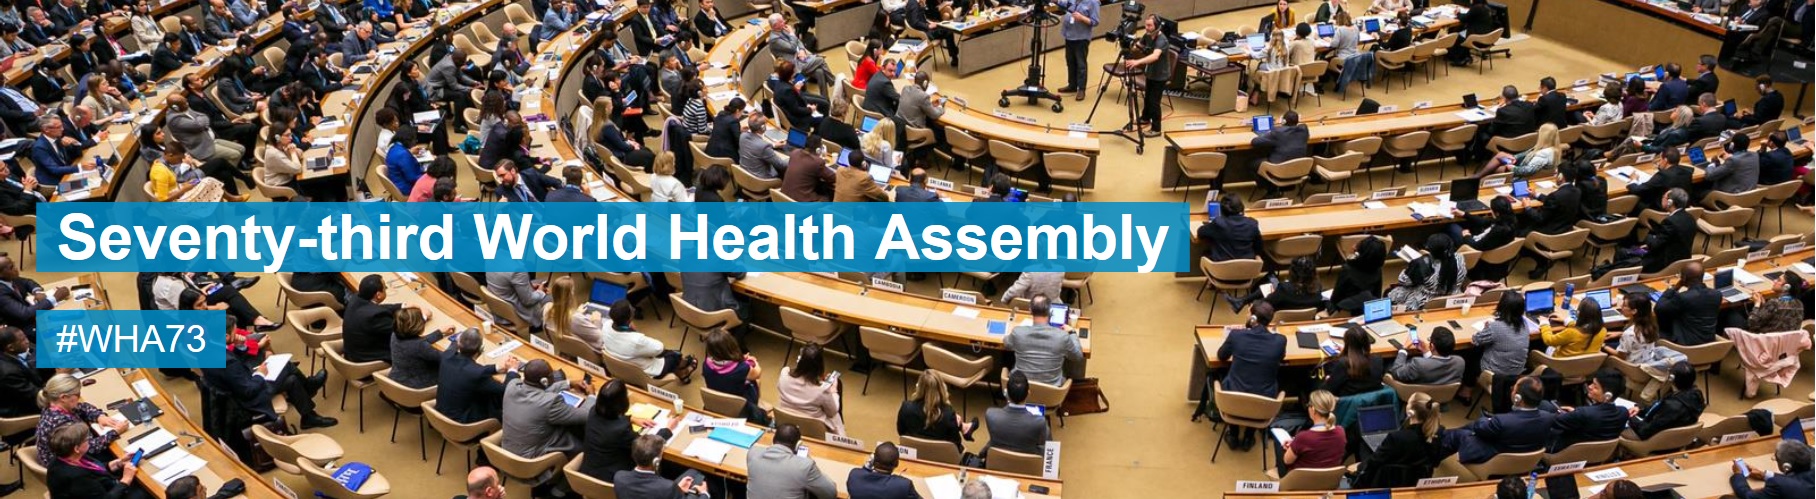 ANCP divulga resposta da Embaixadora e representante permanente do Brasil em Genebra sobre apoio a proposta de alteração no projeto de resolução “Covid-19 Response” apresentado na 73ª Assembleia Mundial da Saúde